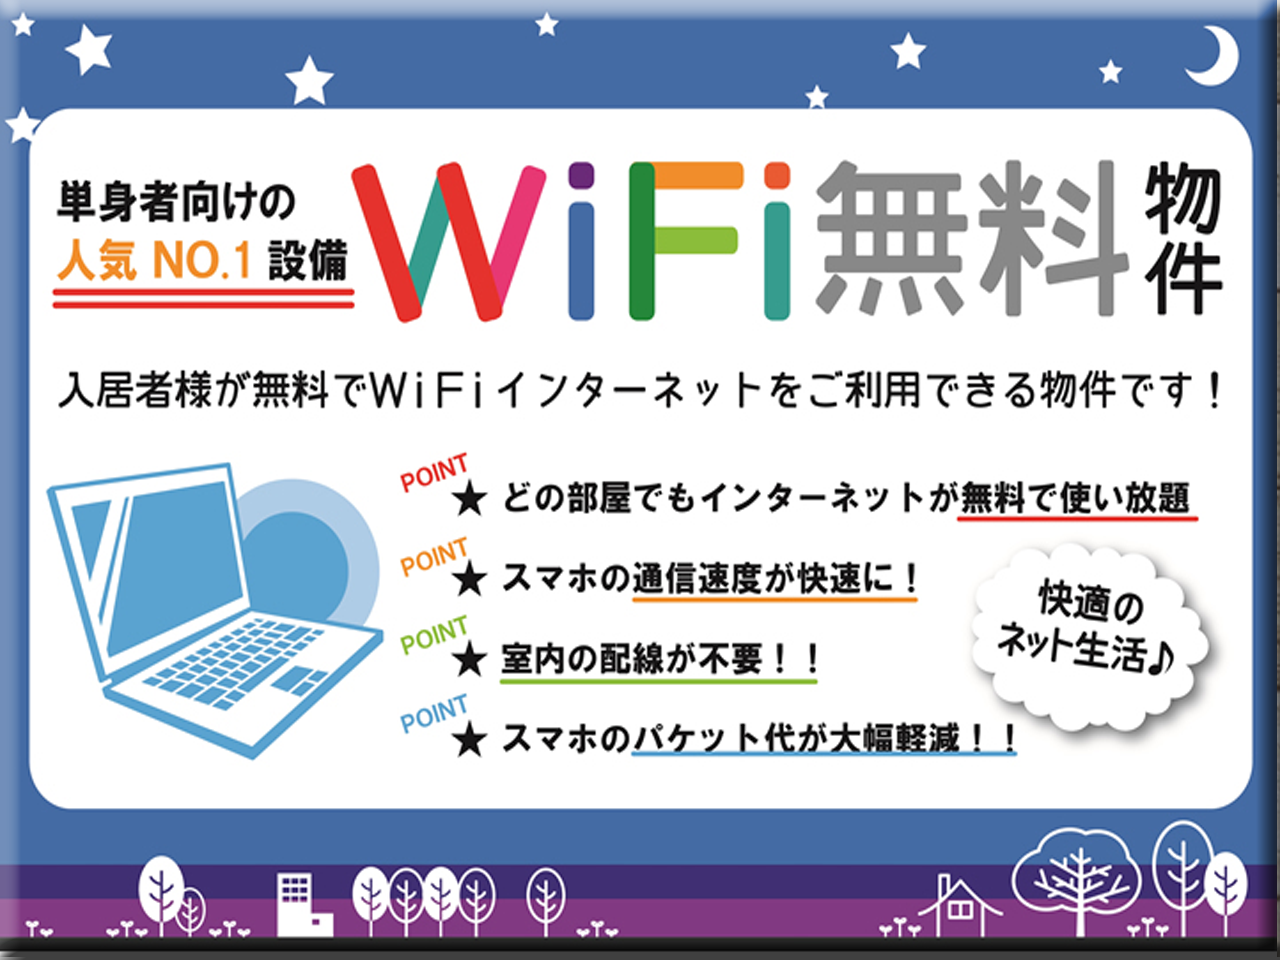 Wi-fiネット無料物件